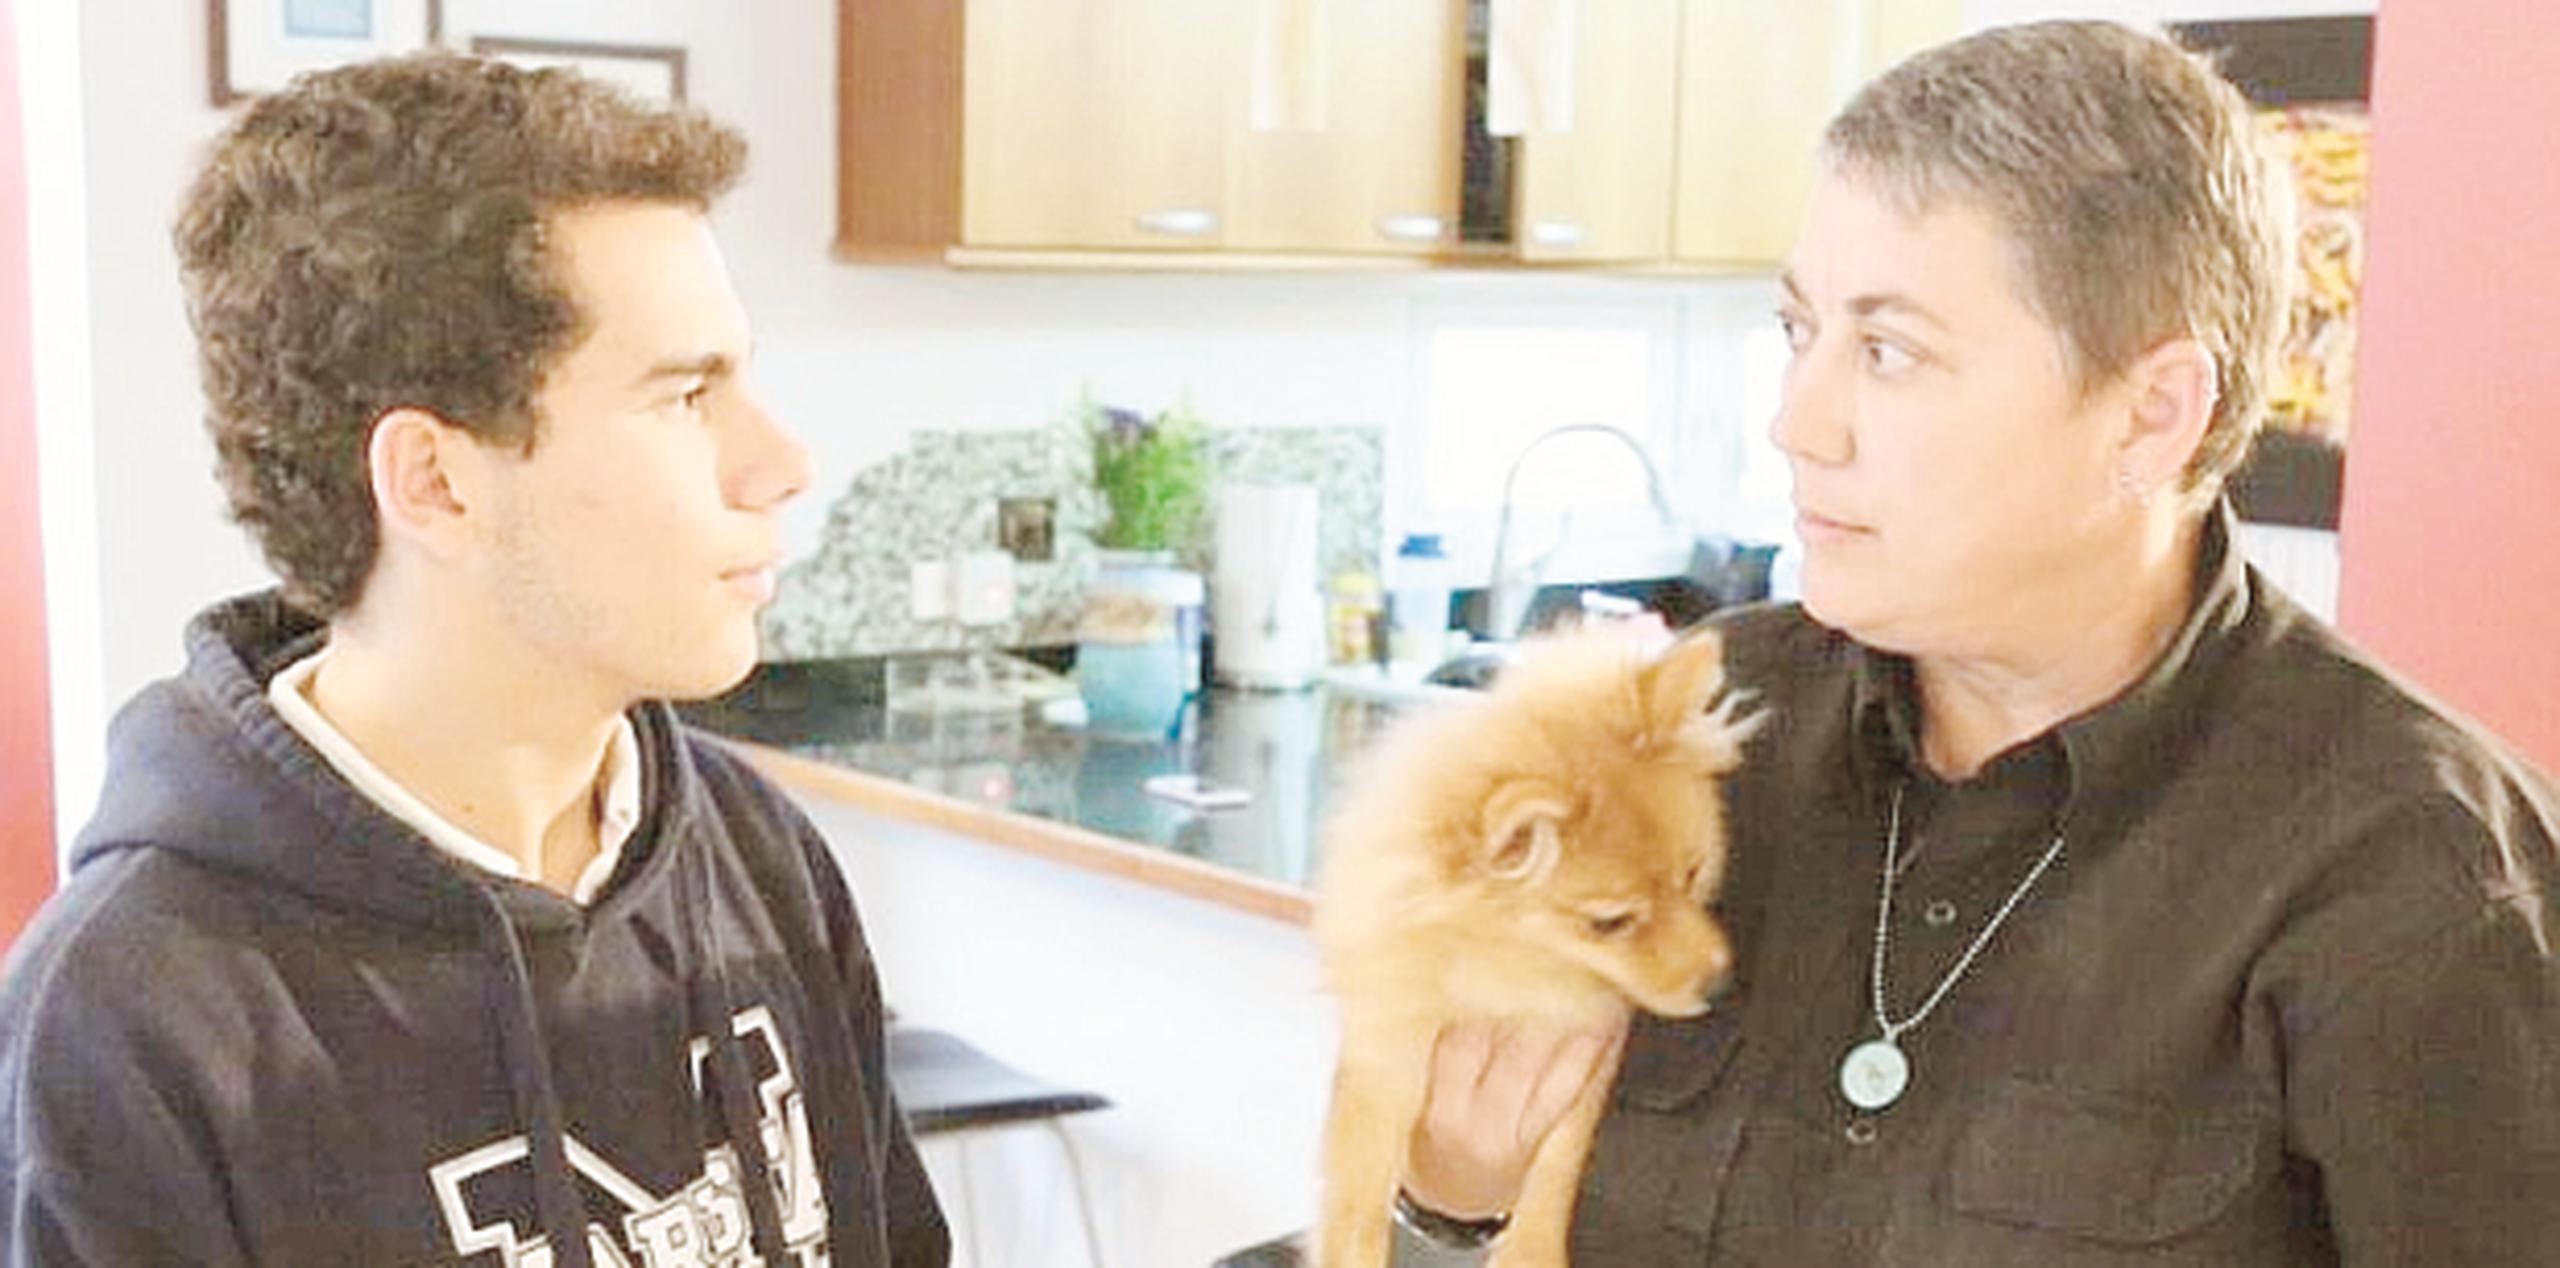 La entrenadora Cheryl DeLoach es especialista en comportamiento canino con más de 20 años de experiencia.  (Suministrada)
